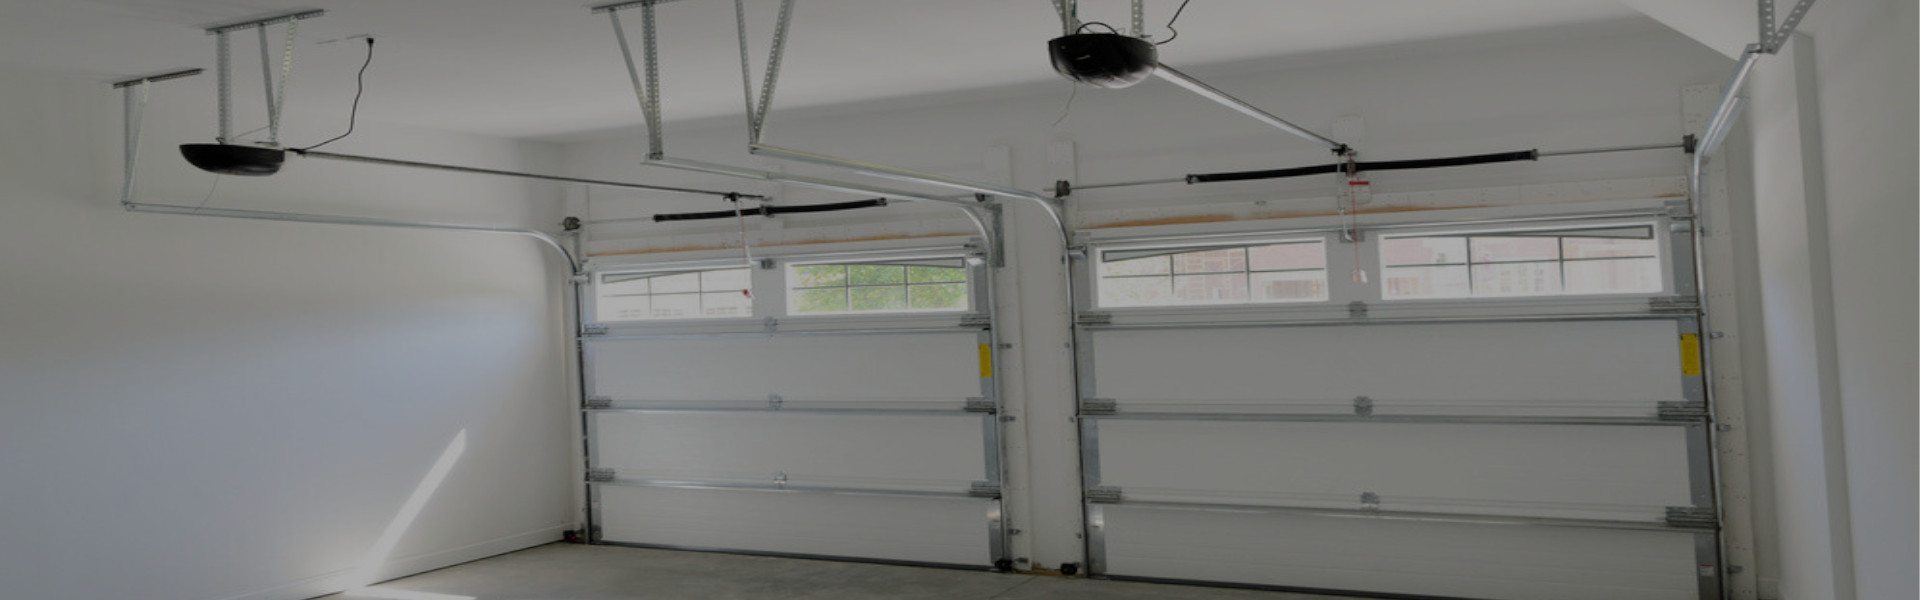 Slider Garage Door Repair, Glaziers in Norwood Green, UB2